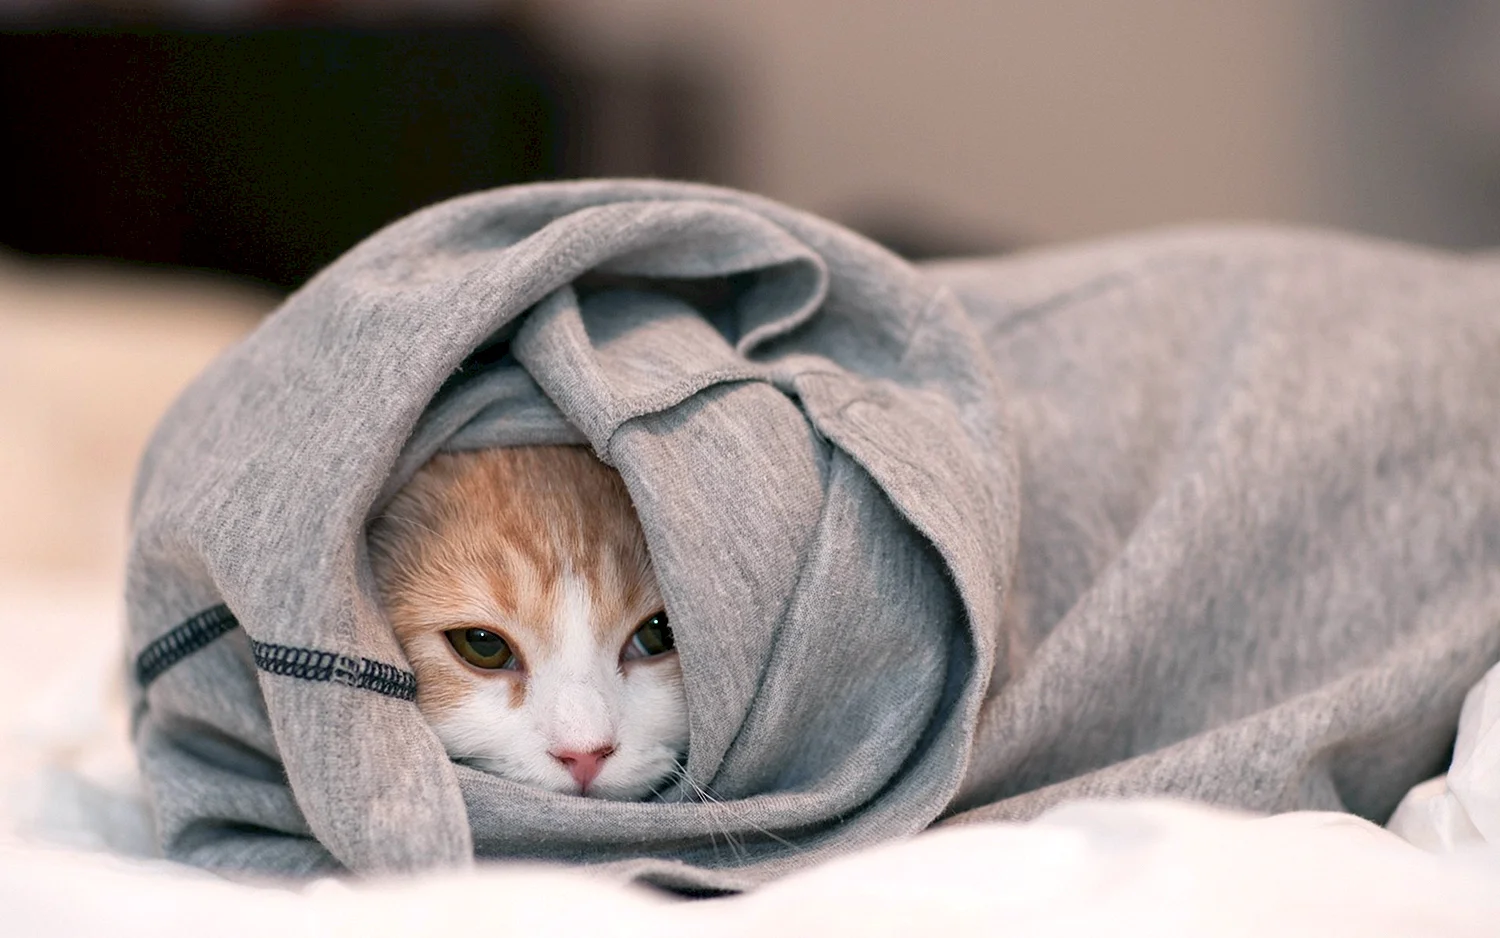 Кот под одеялом